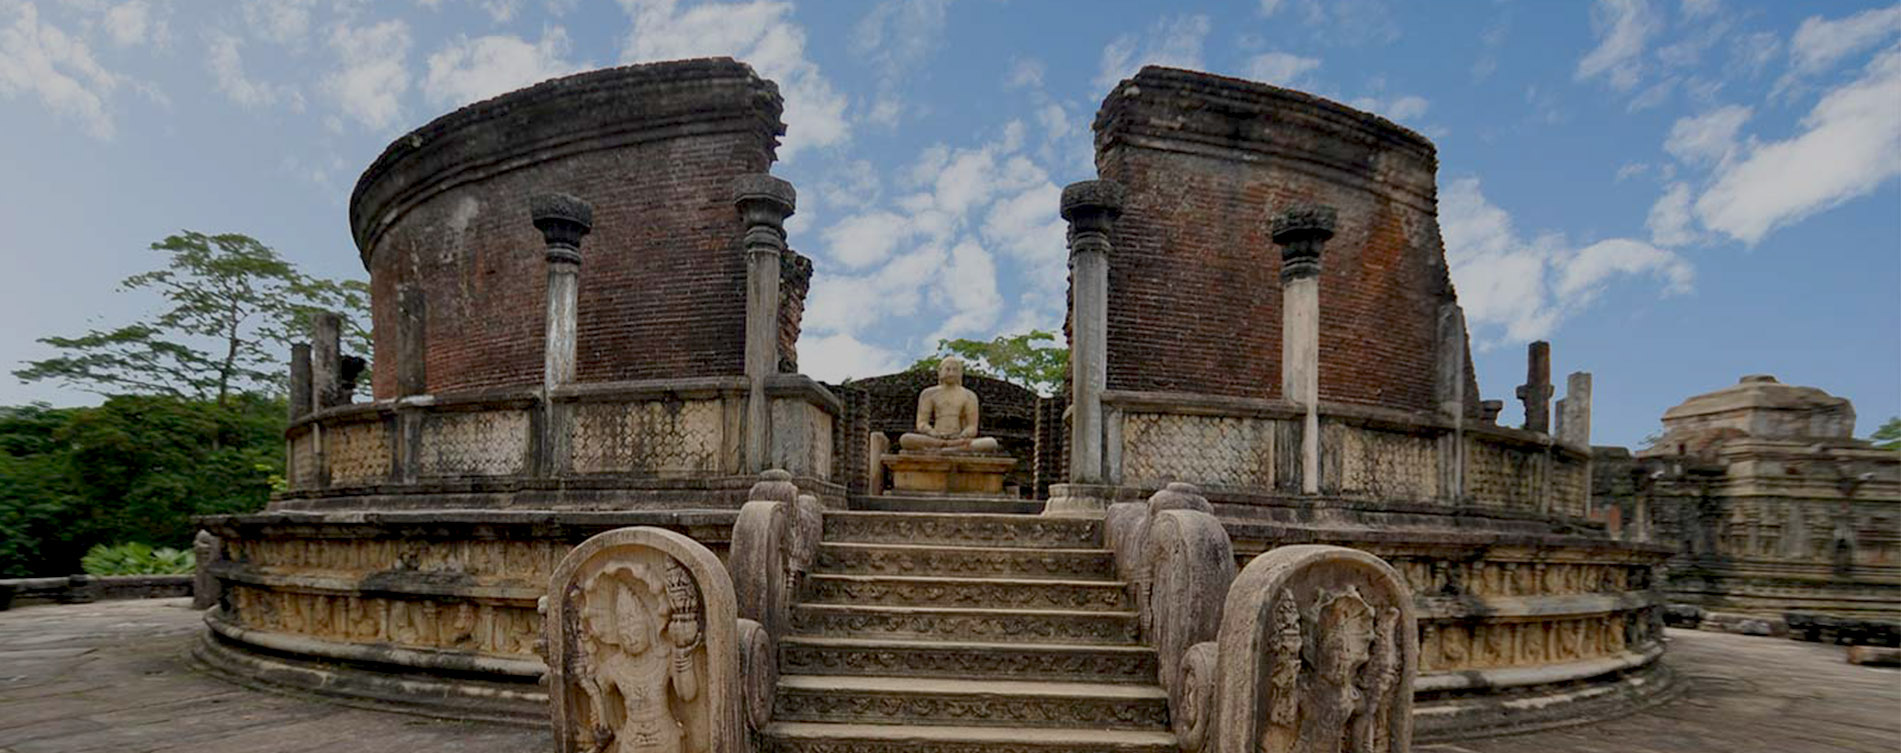 Sigiriya, Dambulla & Polonnaruwa Day Tour